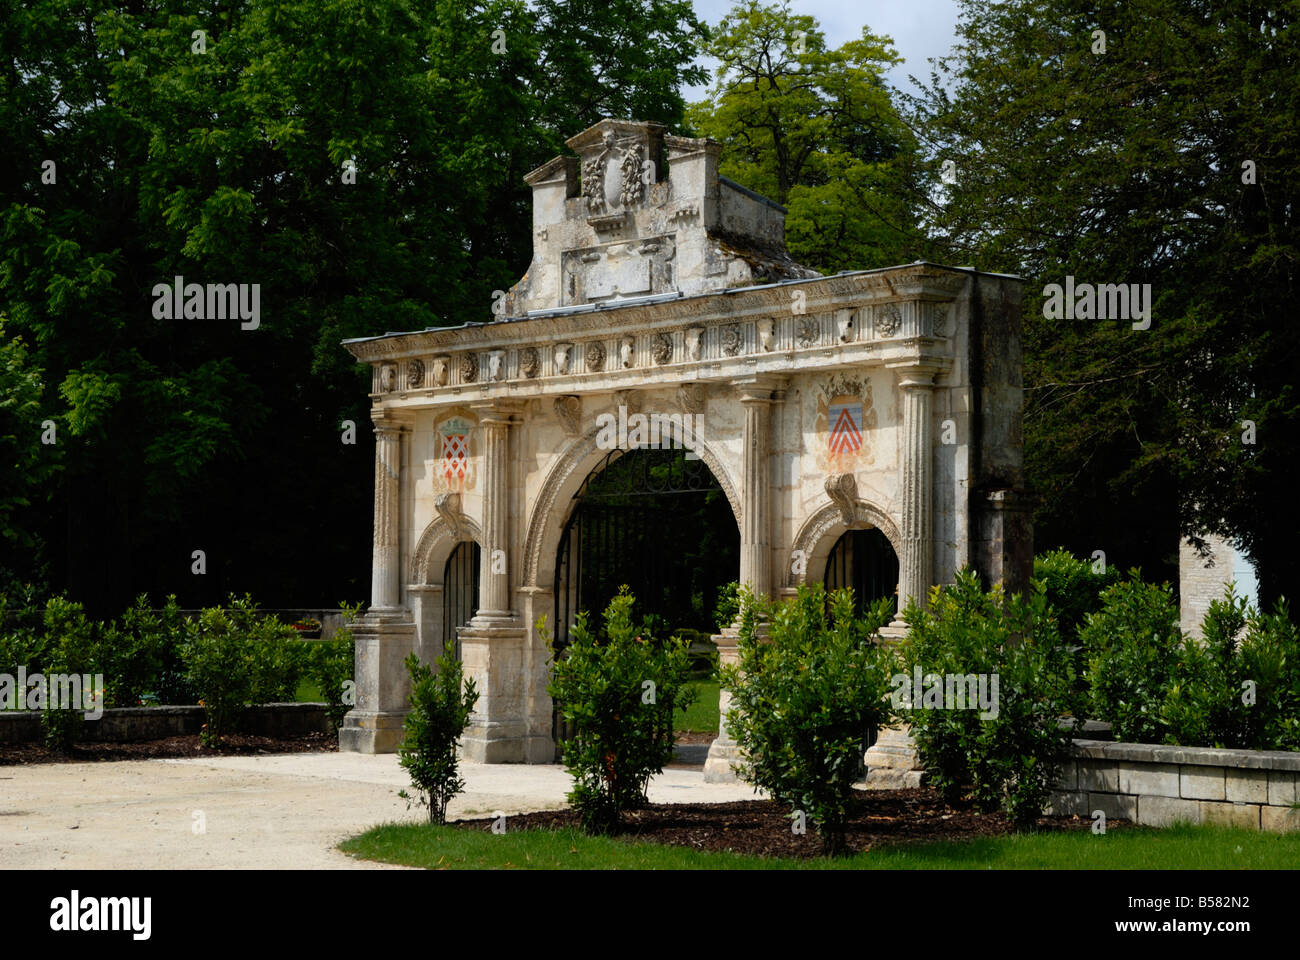 La Porte Renaissance, Surgeres, Charente-Maritime, France, Europe Stock Photo